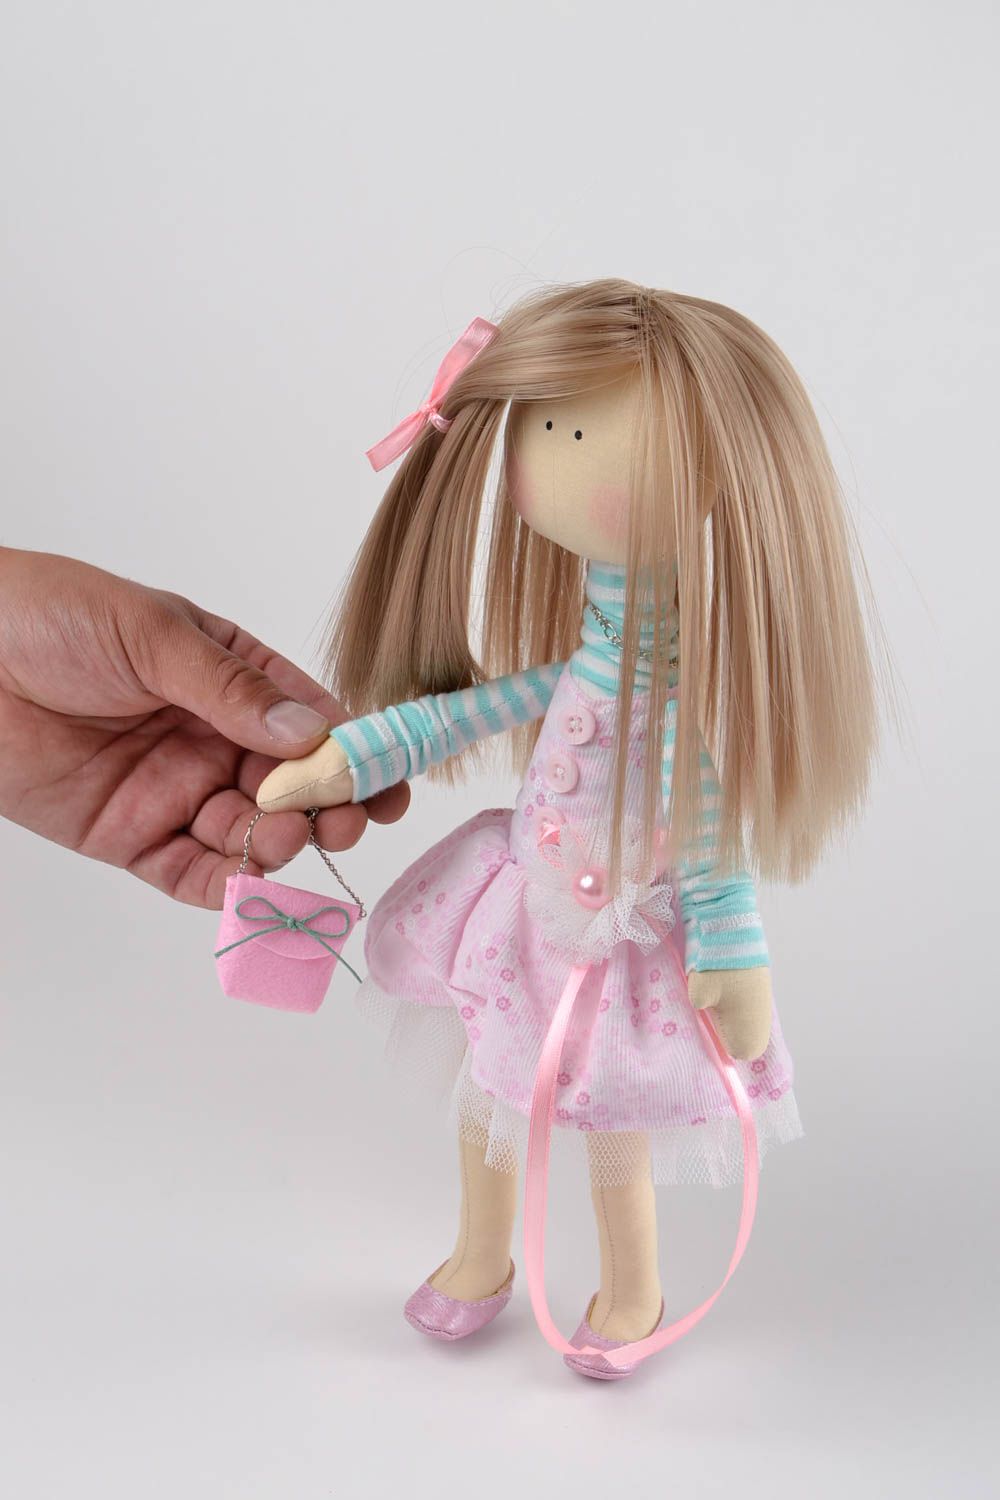 Handmade Puppe aus Stoff Haus Dekoration Geschenk für Freundin schön weich foto 2